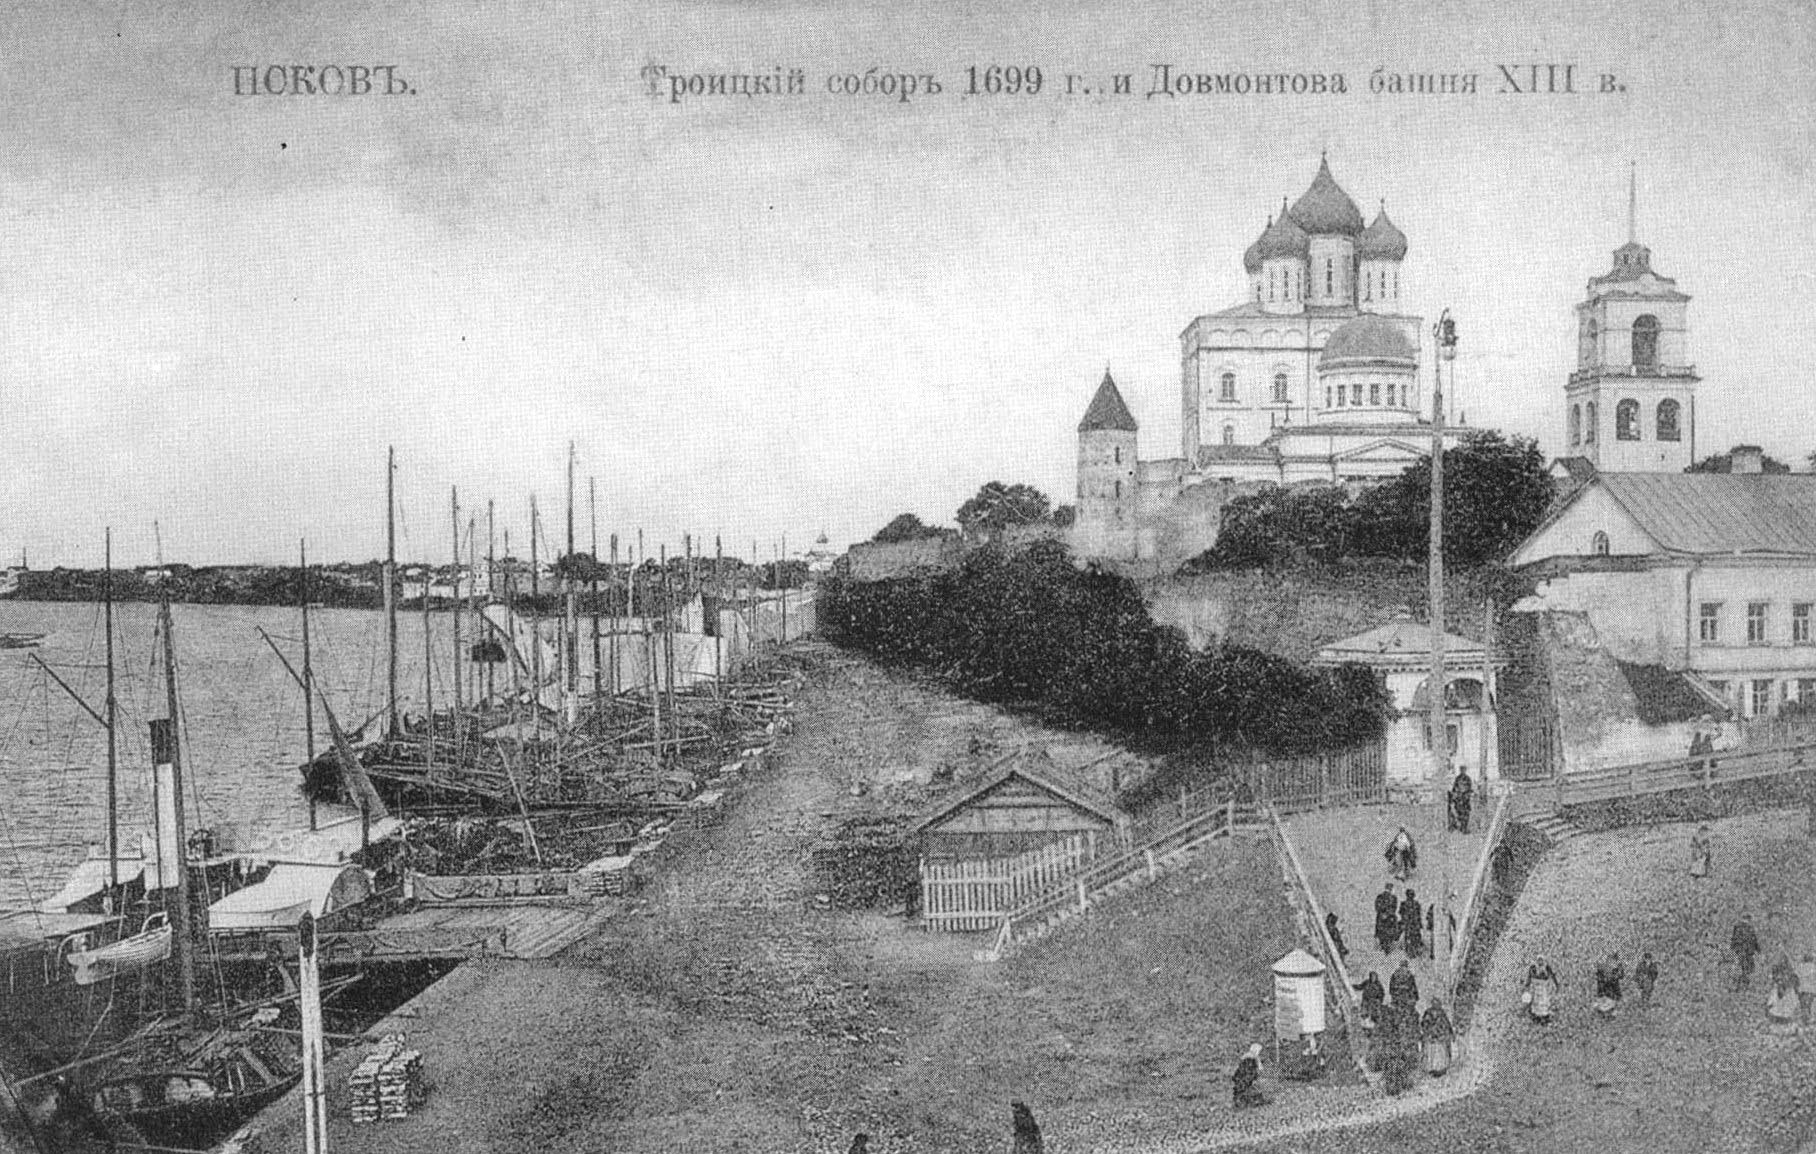 Псков. Троицкий собор 1699 г. и Довмонтова башня XIII века.